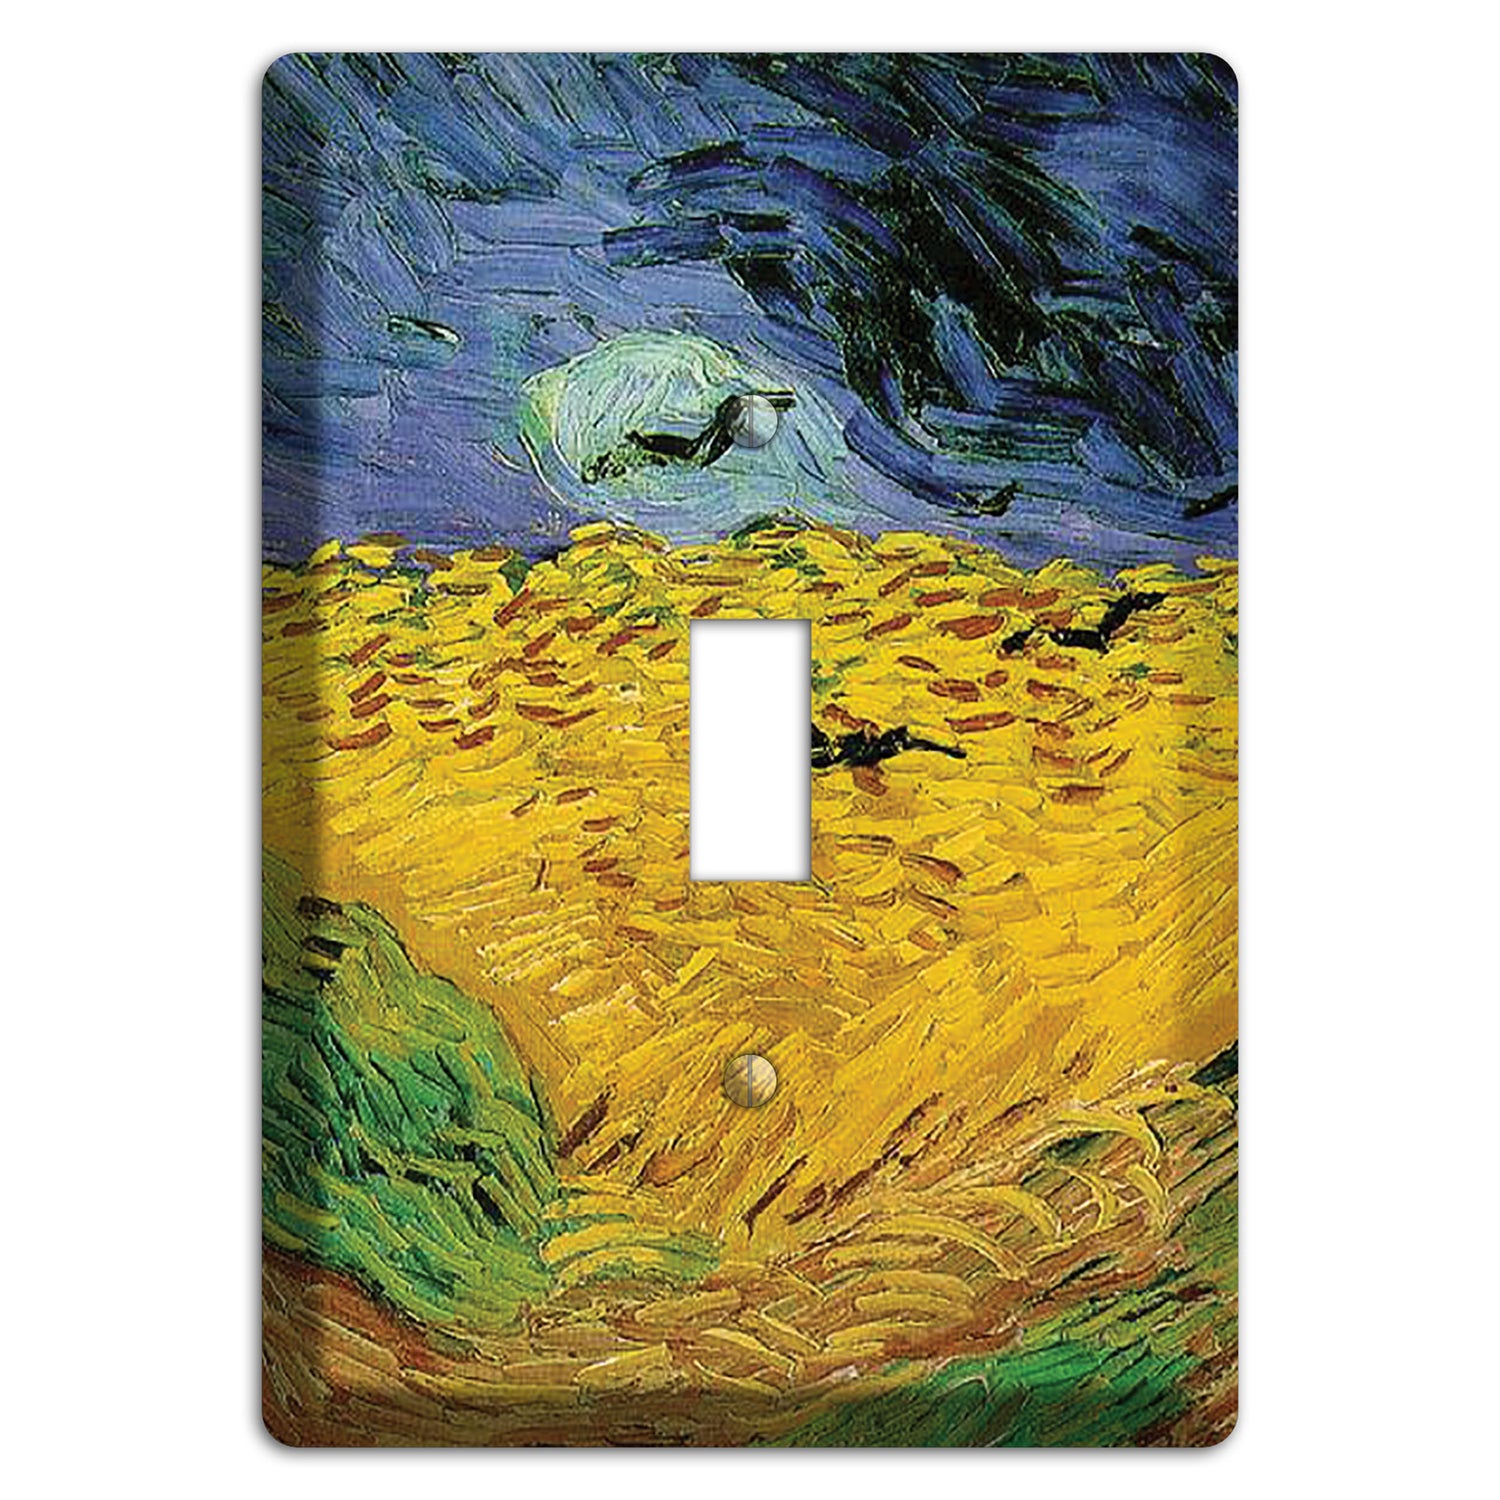 Vincent Van Gogh 6 Cover Plates